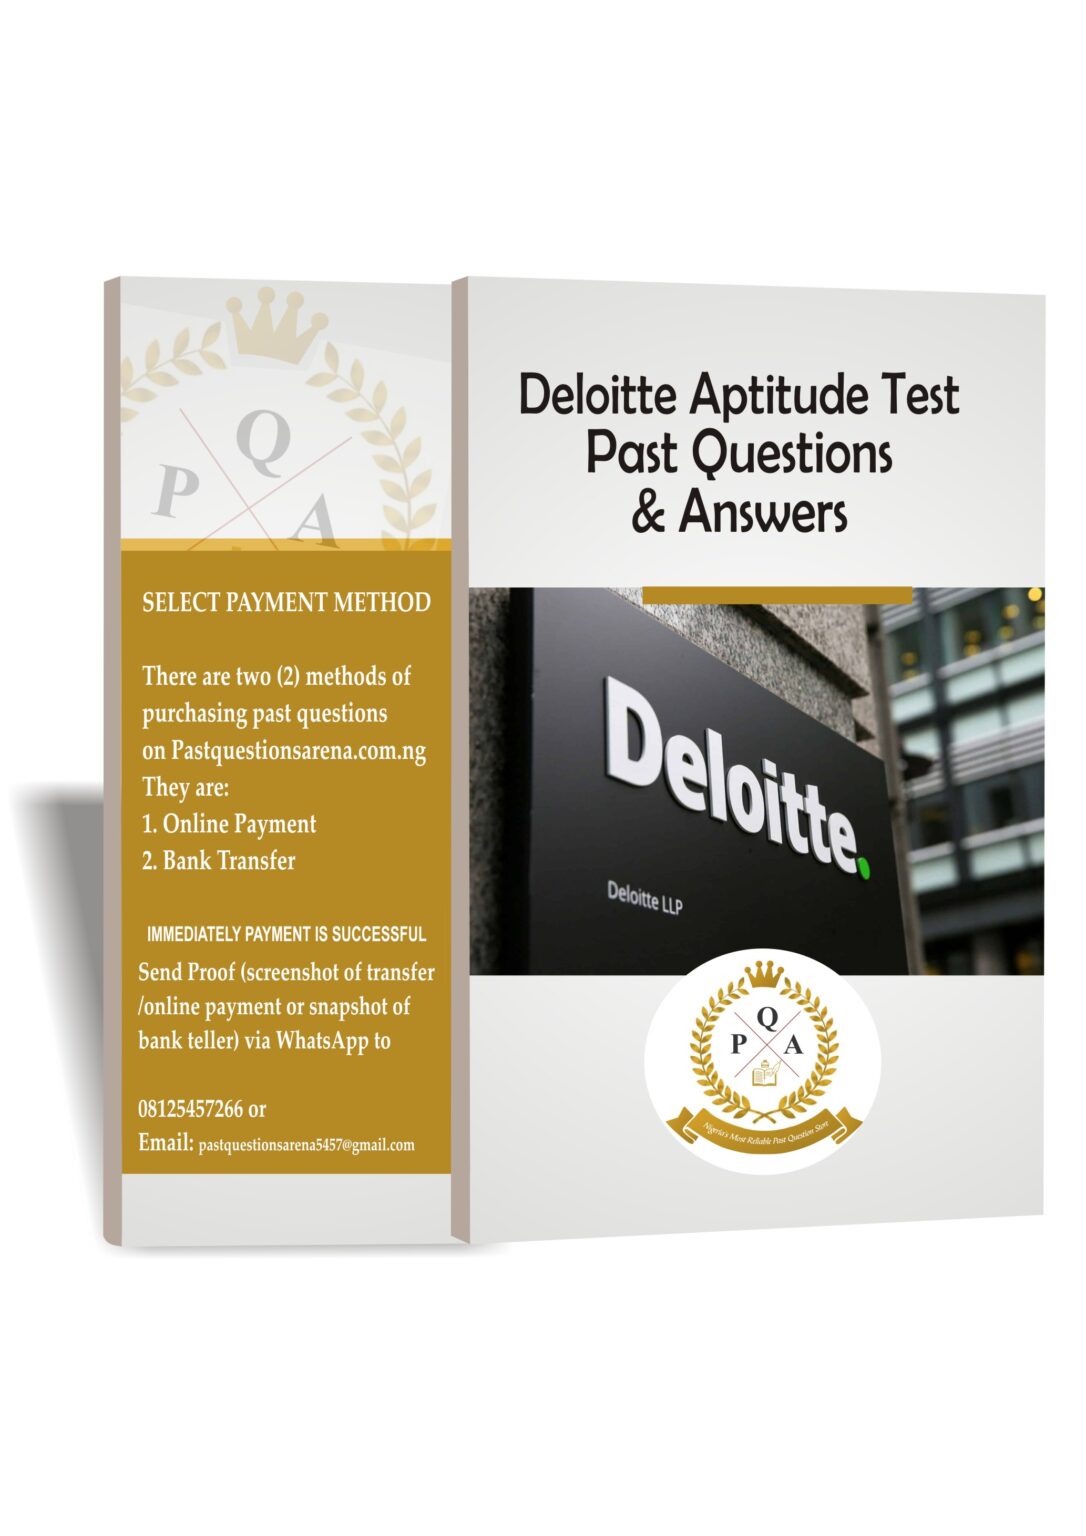 Deloitte Aptitude Test Past Questions